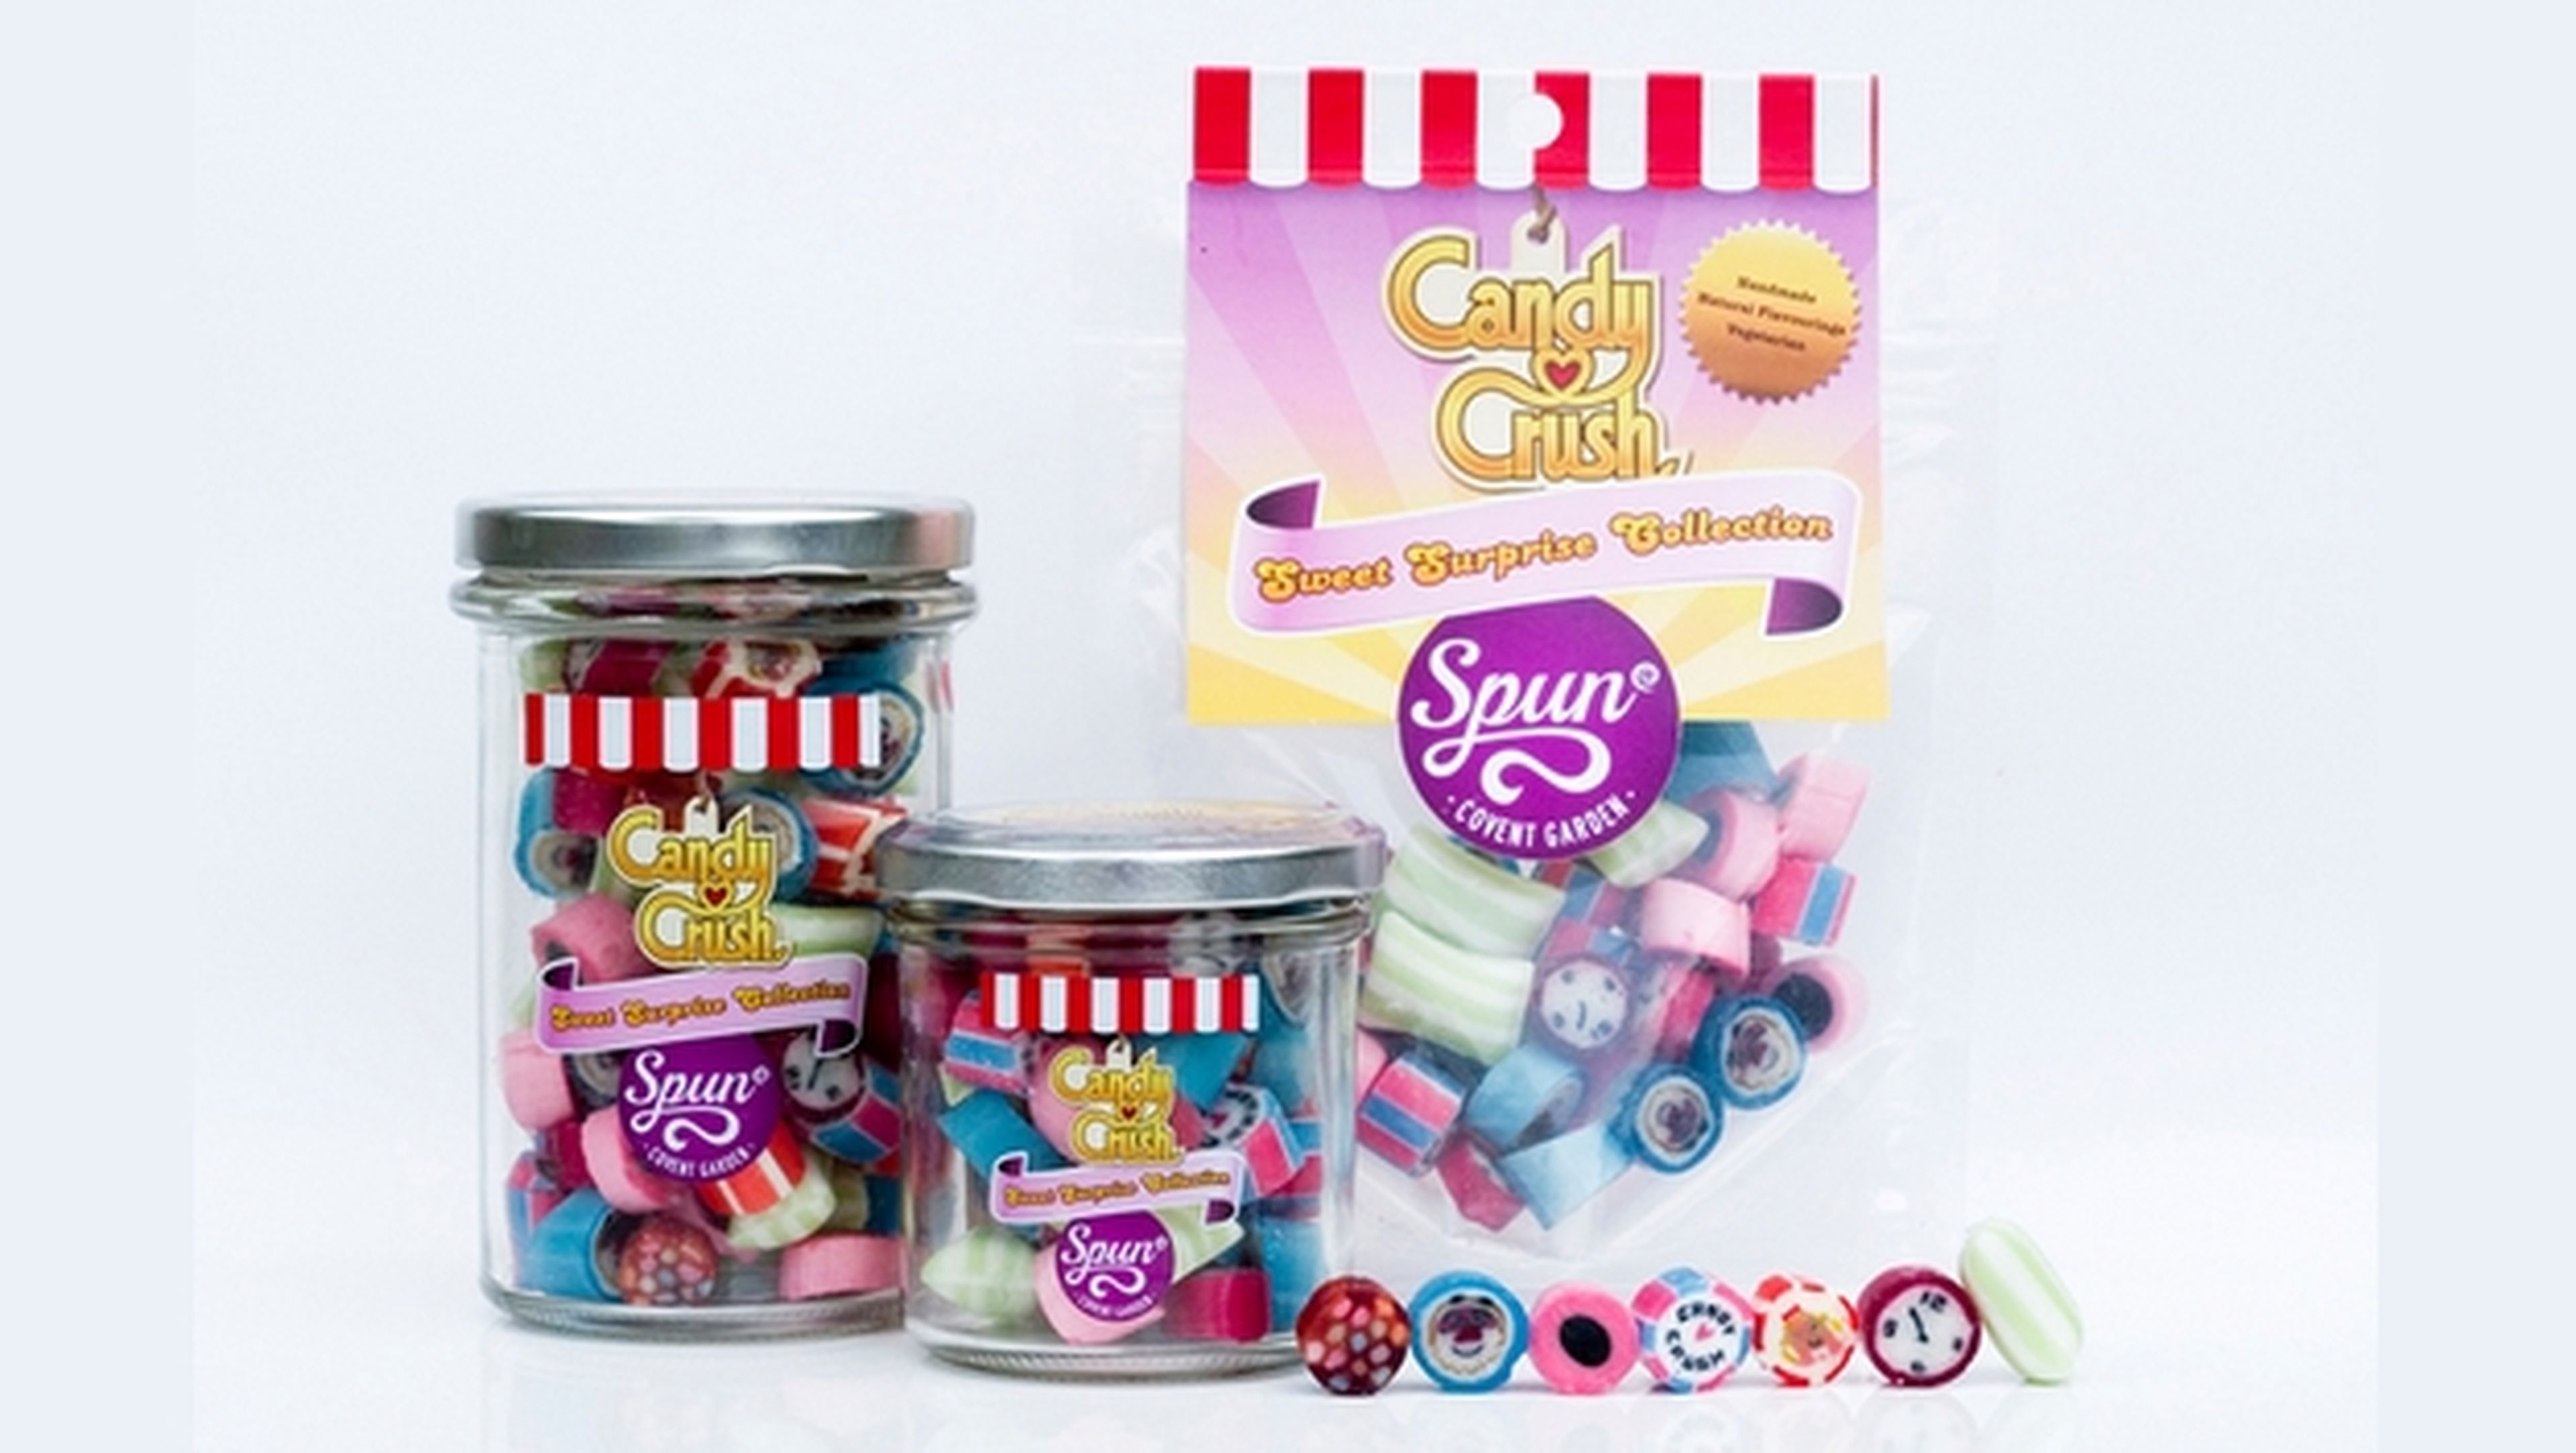 Spun Candy comercializa caramelos reales basados en los que aparecen en Candy Crash Saga.